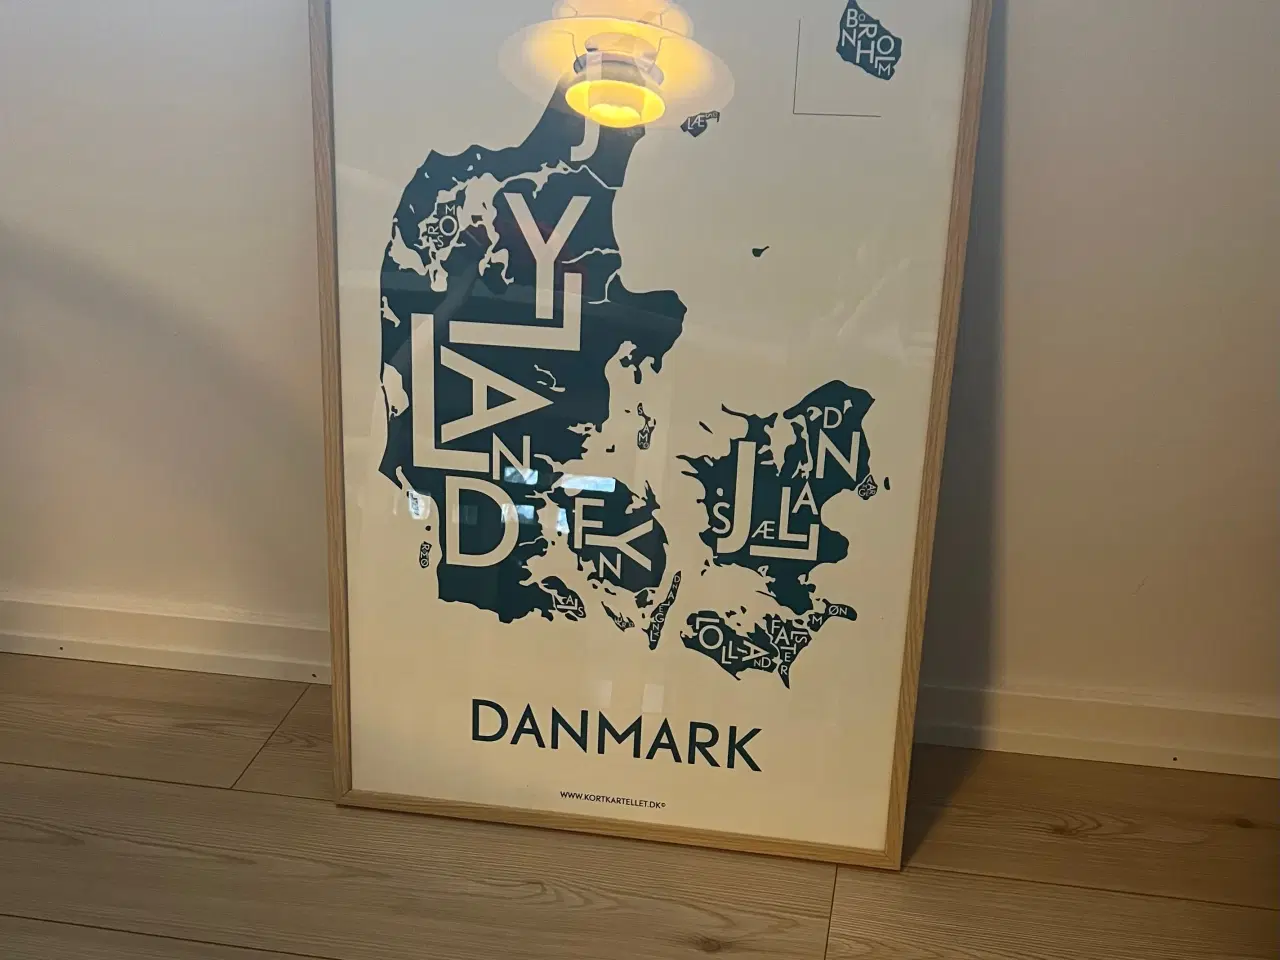 Billede 1 - Plakat over Danmark fra Kortkartellet 